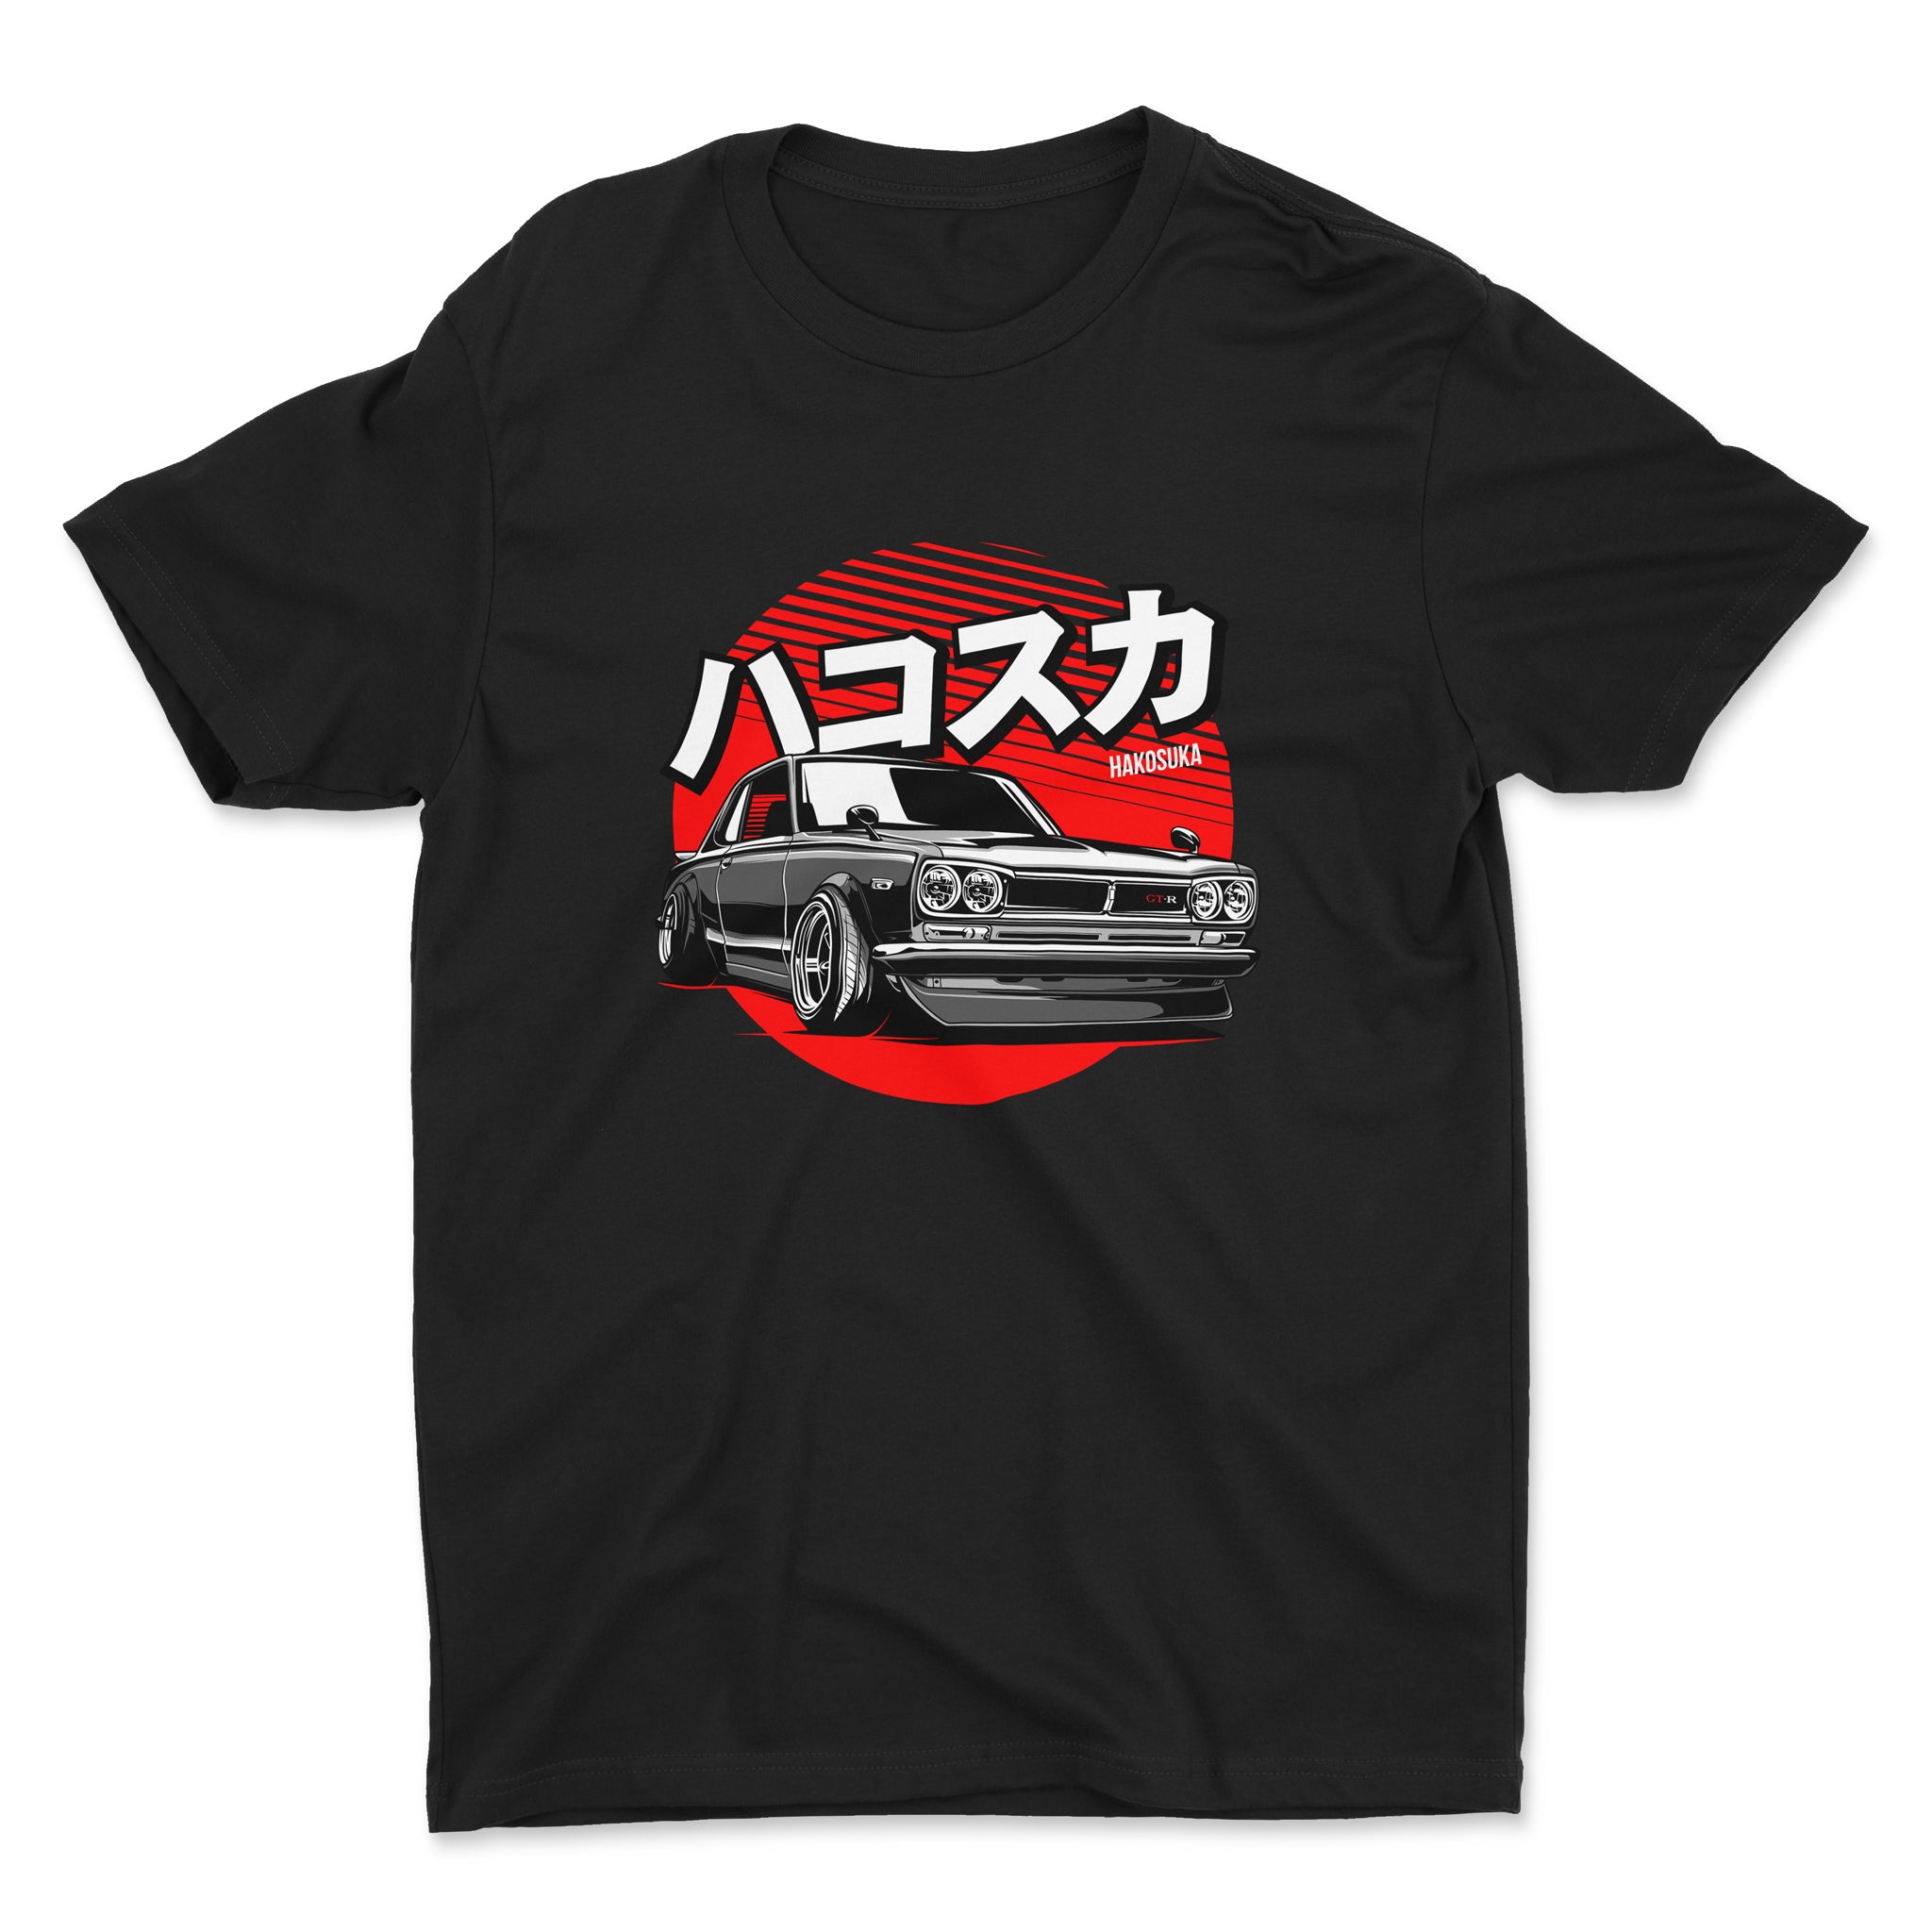 Nissan Skyline GTR Hakosuka - Car T-Shirt - Black. Mockup.